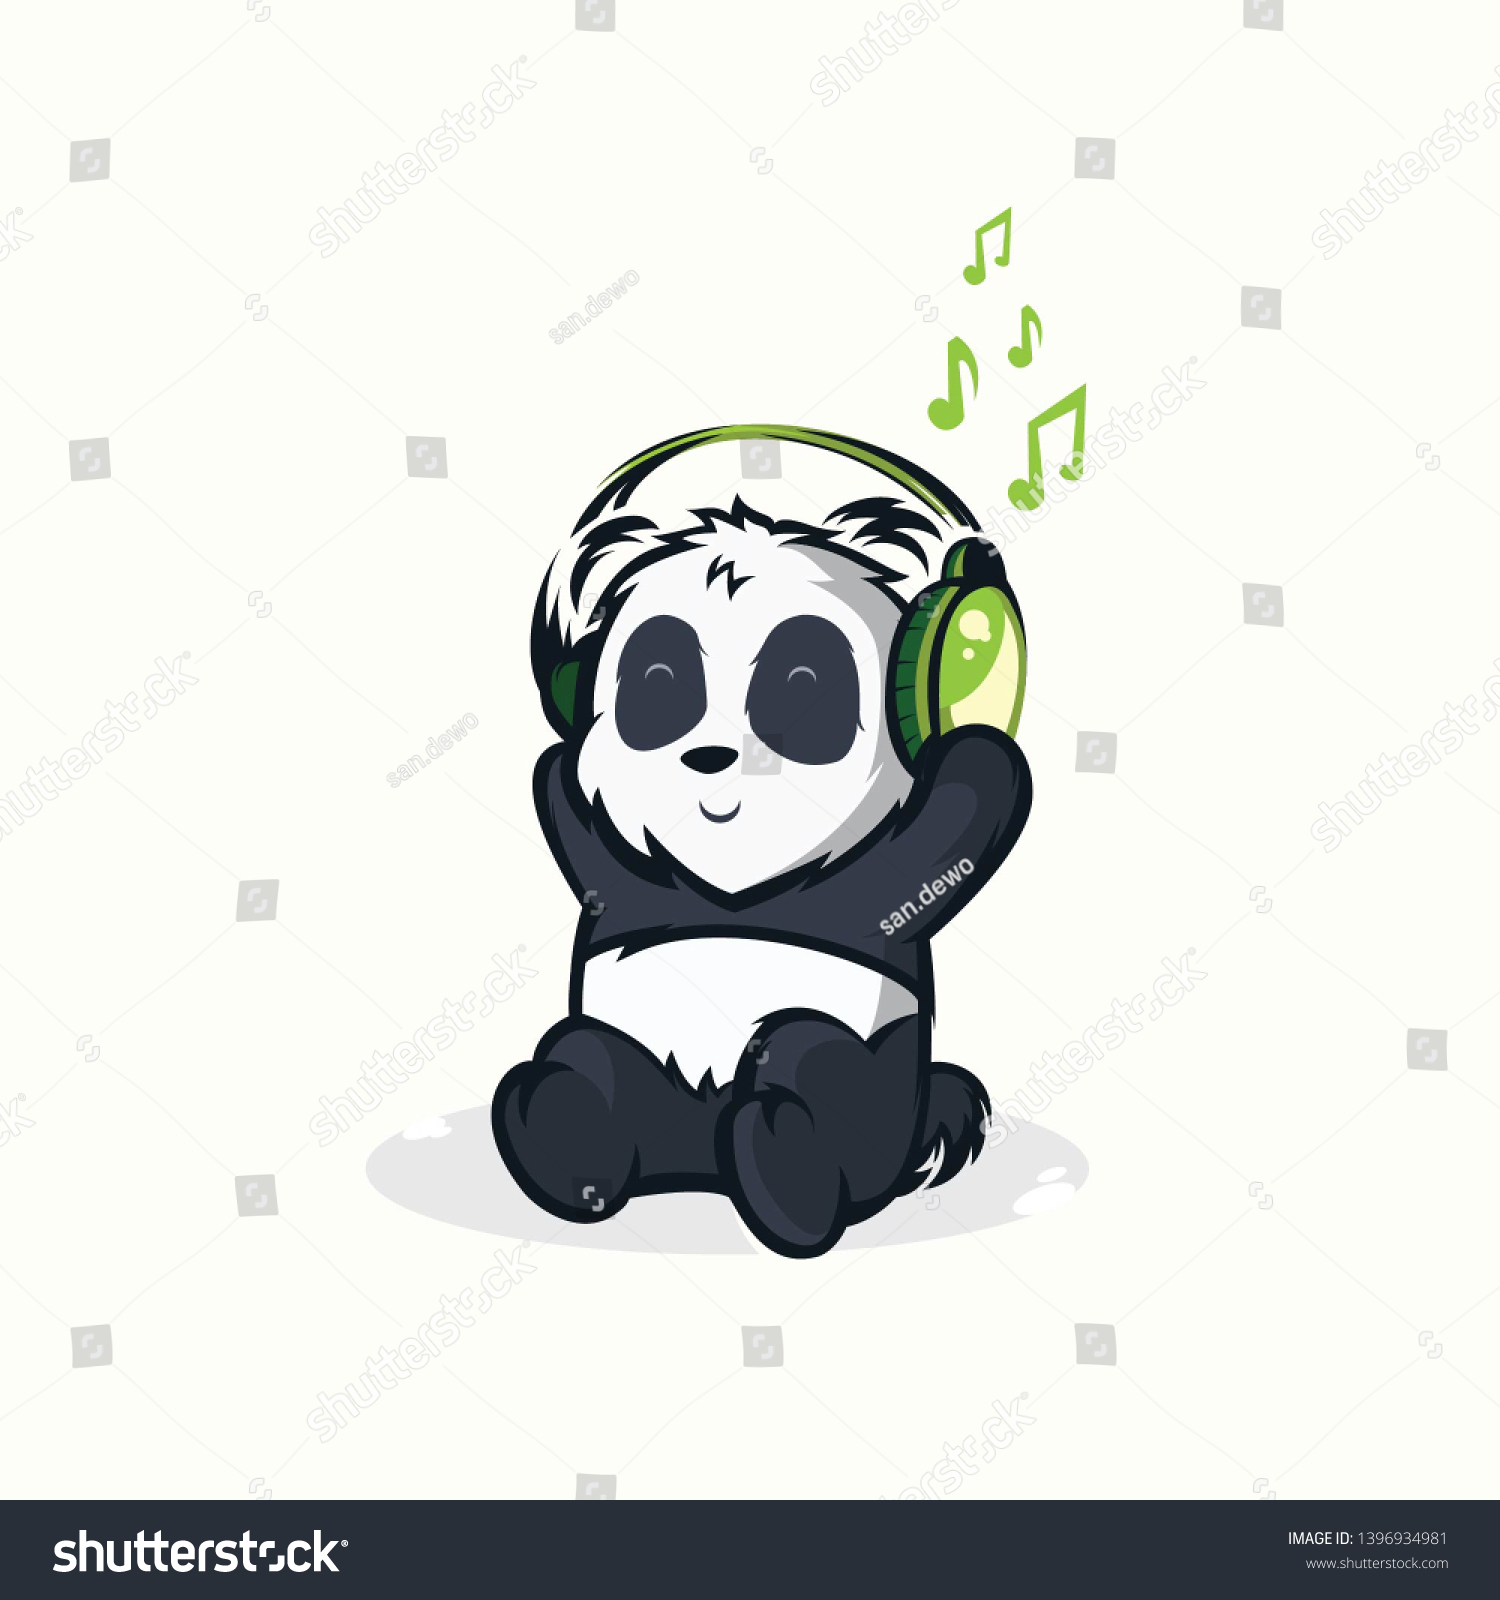 Illustrations Funny Pandas Listening Music Designs Stock Illustration ...